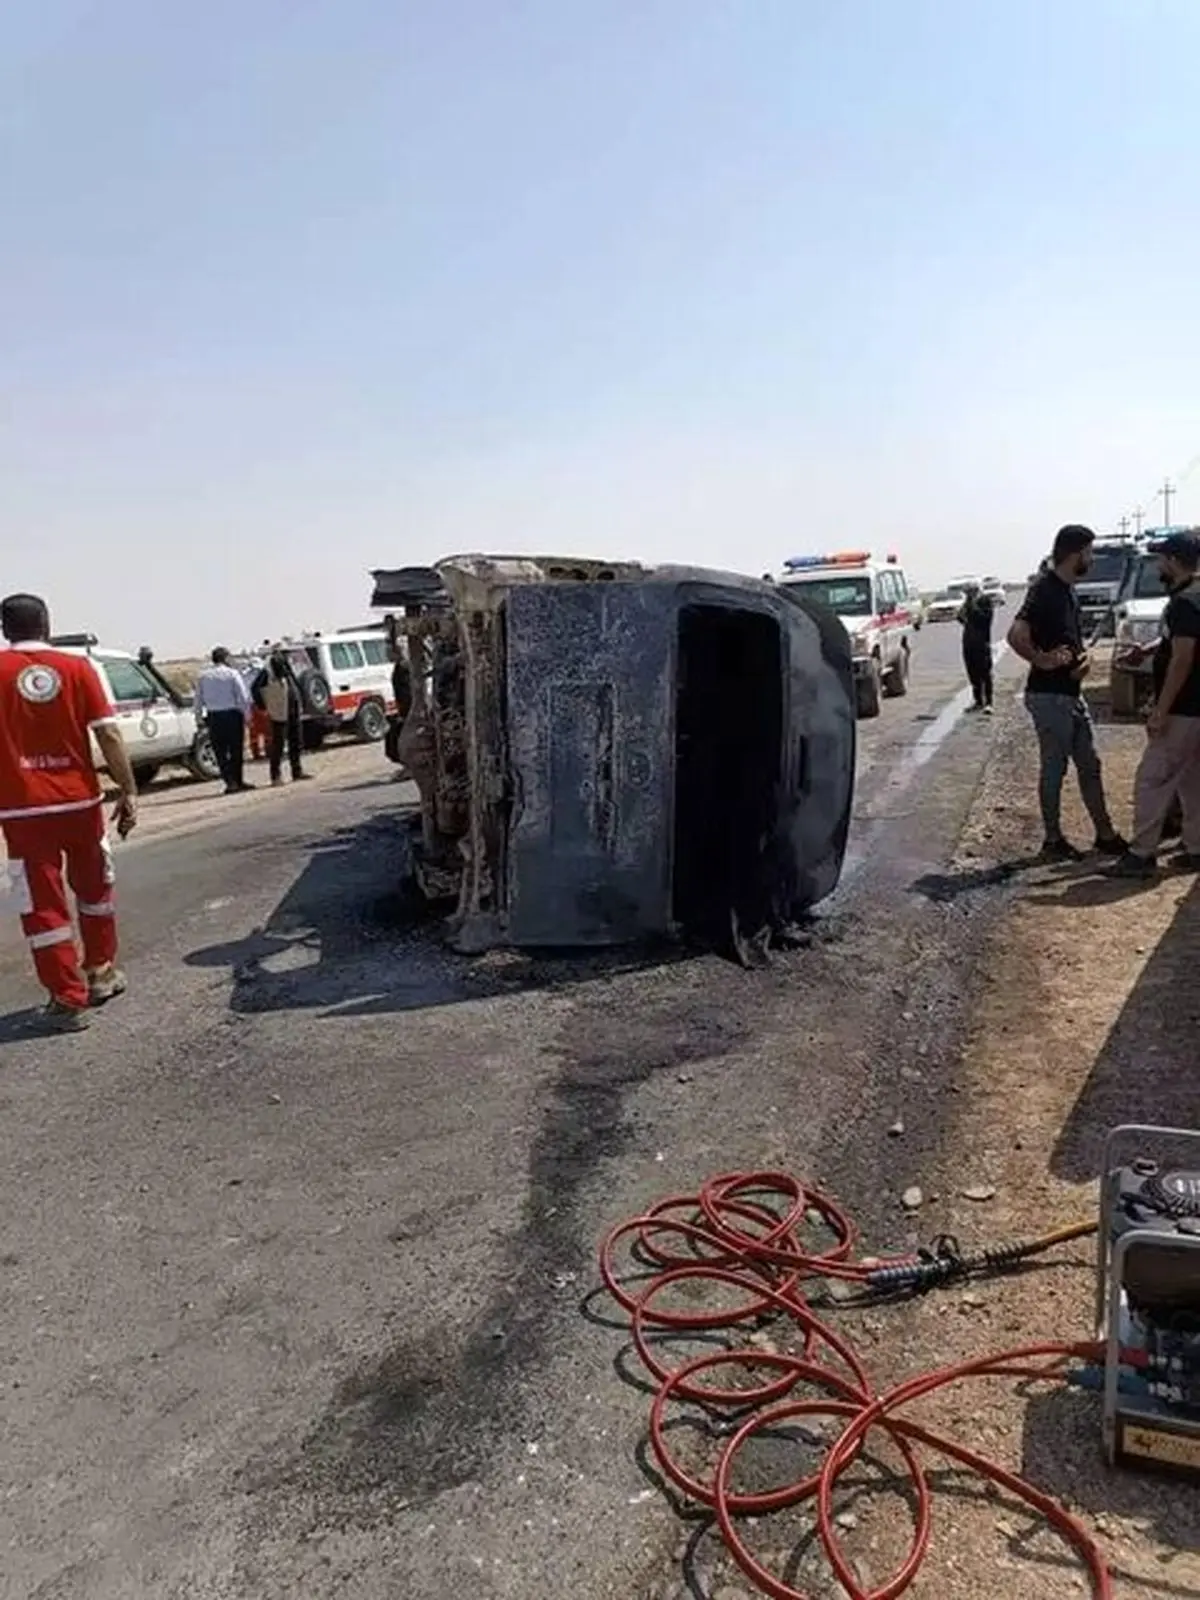 
جان باختن ۷ زائر ایرانی در سانحه رانندگی در عراق
